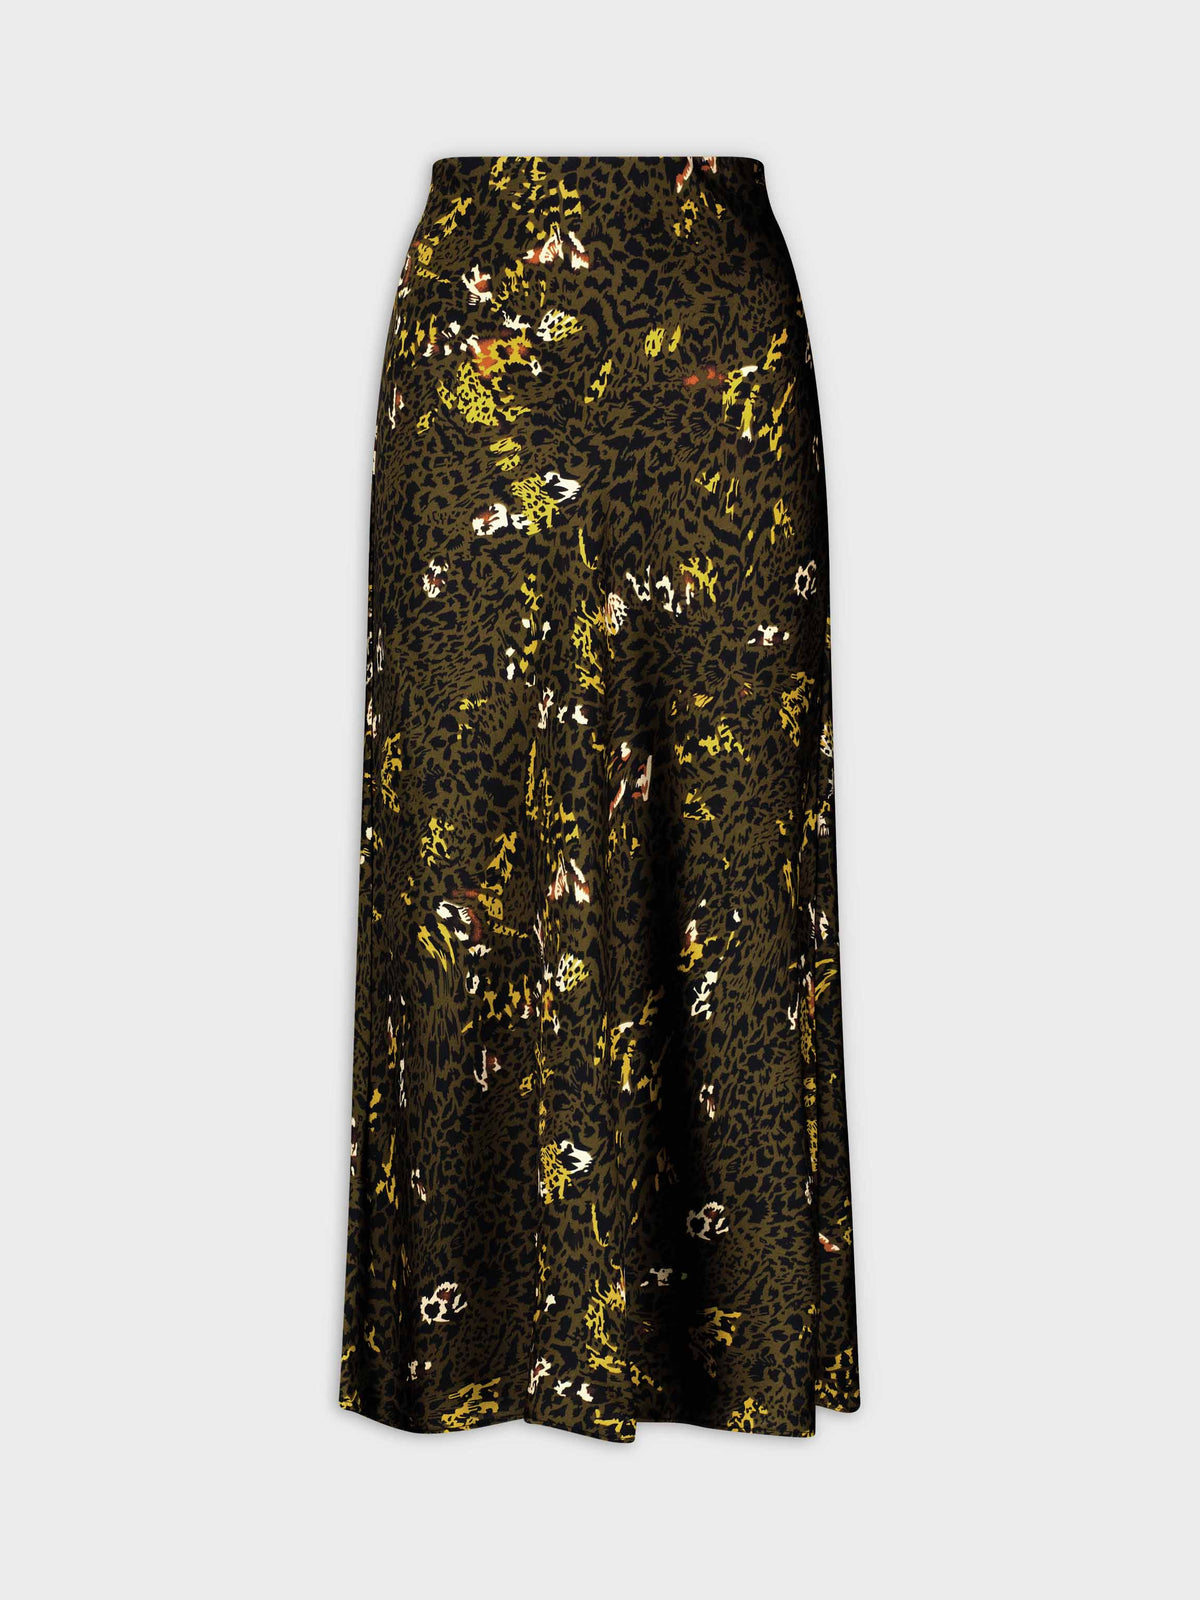 Printed Satin Slip Skirt-Green Leopard